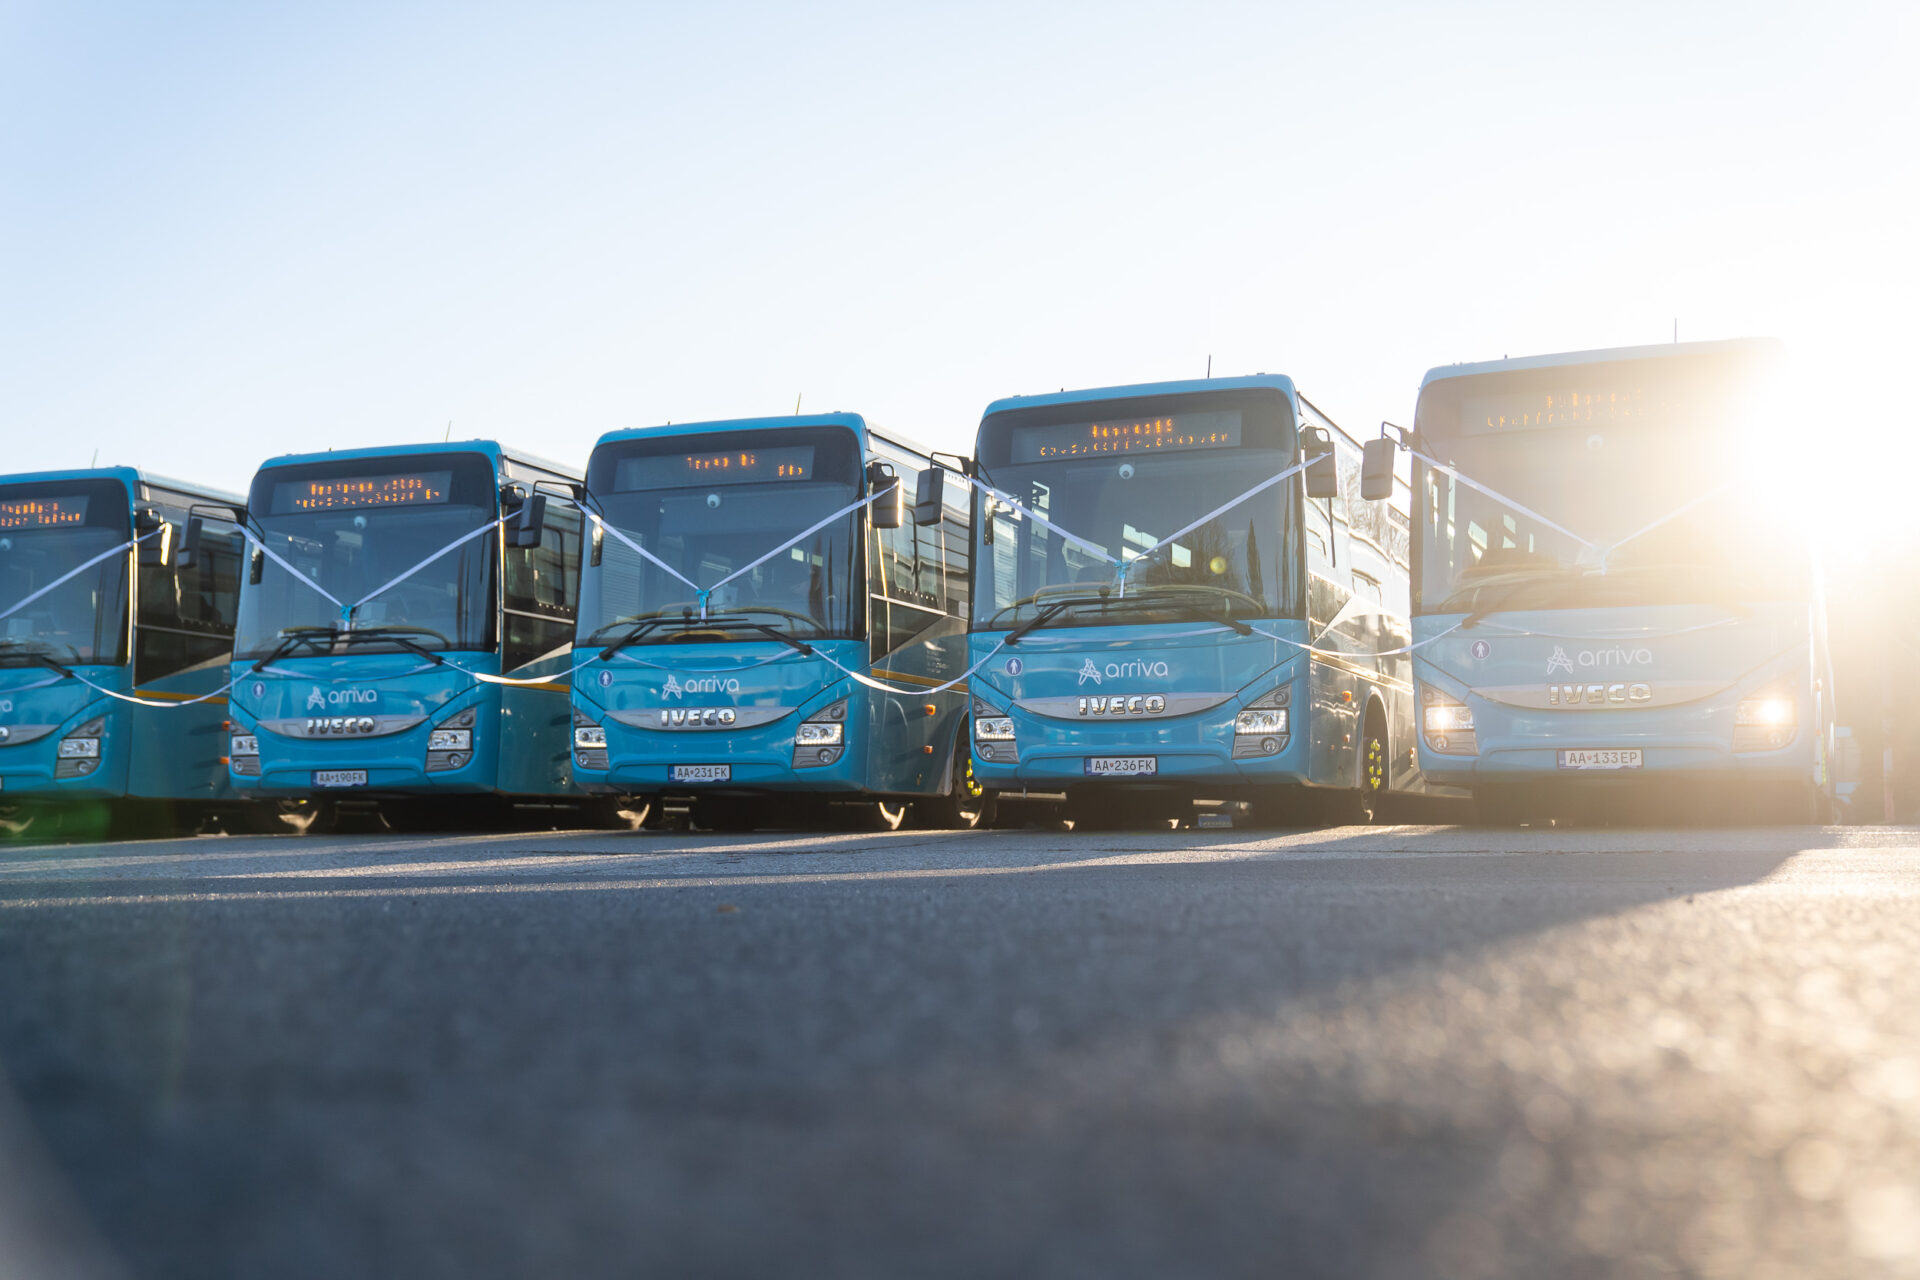 Predstavili sme 74 nových moderných autobusov